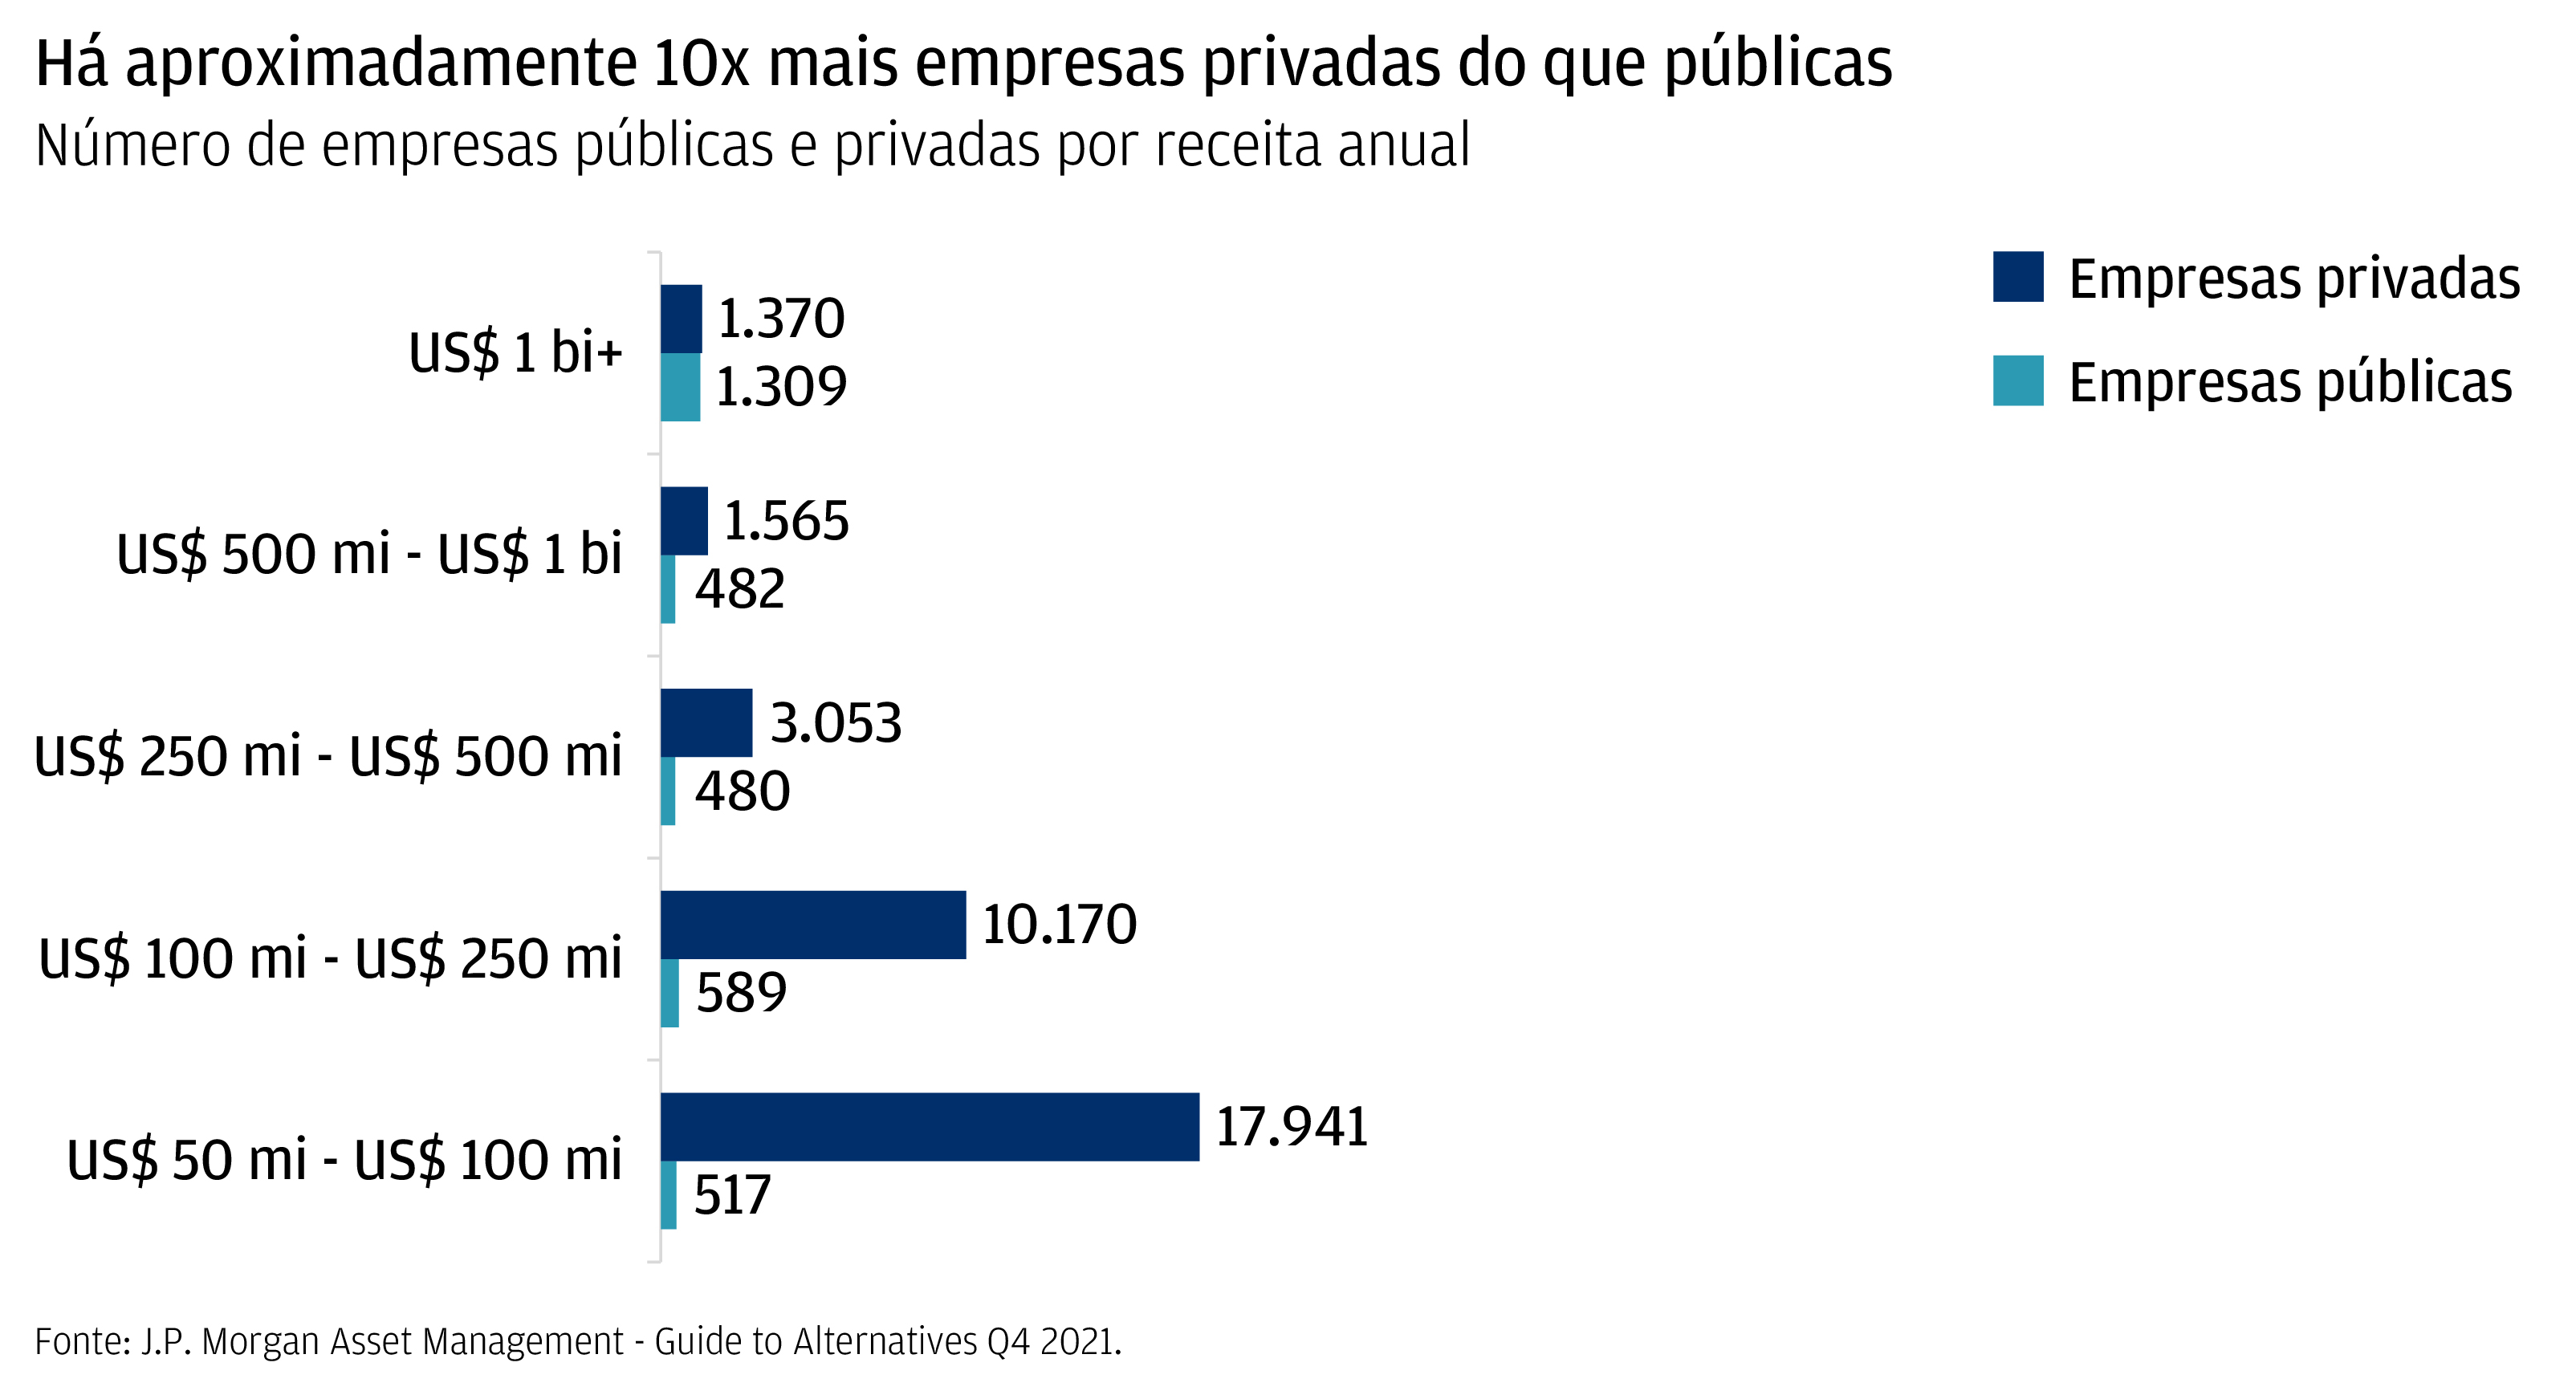 Este gráfico mostra o número de empresas públicas e privadas por receita anual.